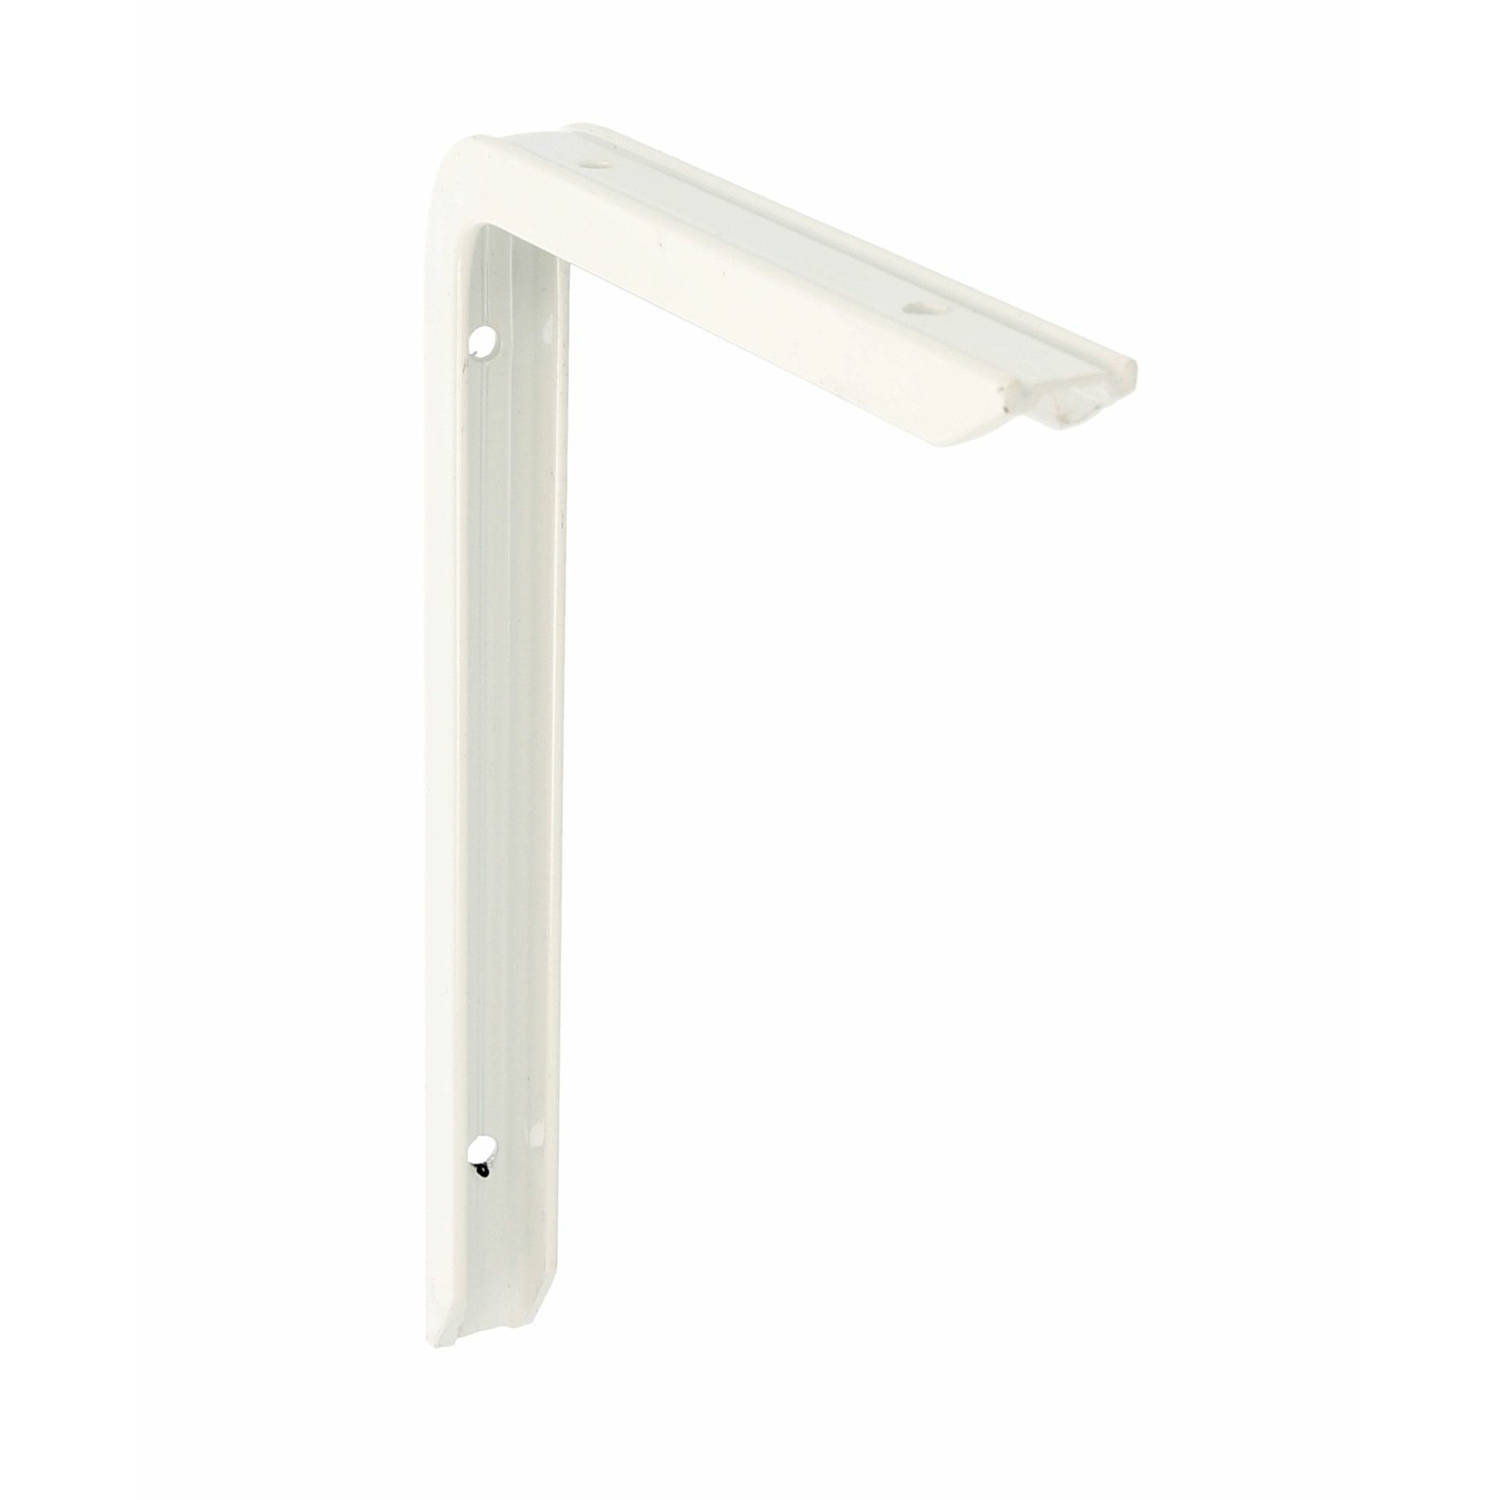 AMIG Plankdrager/planksteun - aluminium - gelakt wit - H200 x B150 mm - max gewicht 60 kg - boekenplank steunen